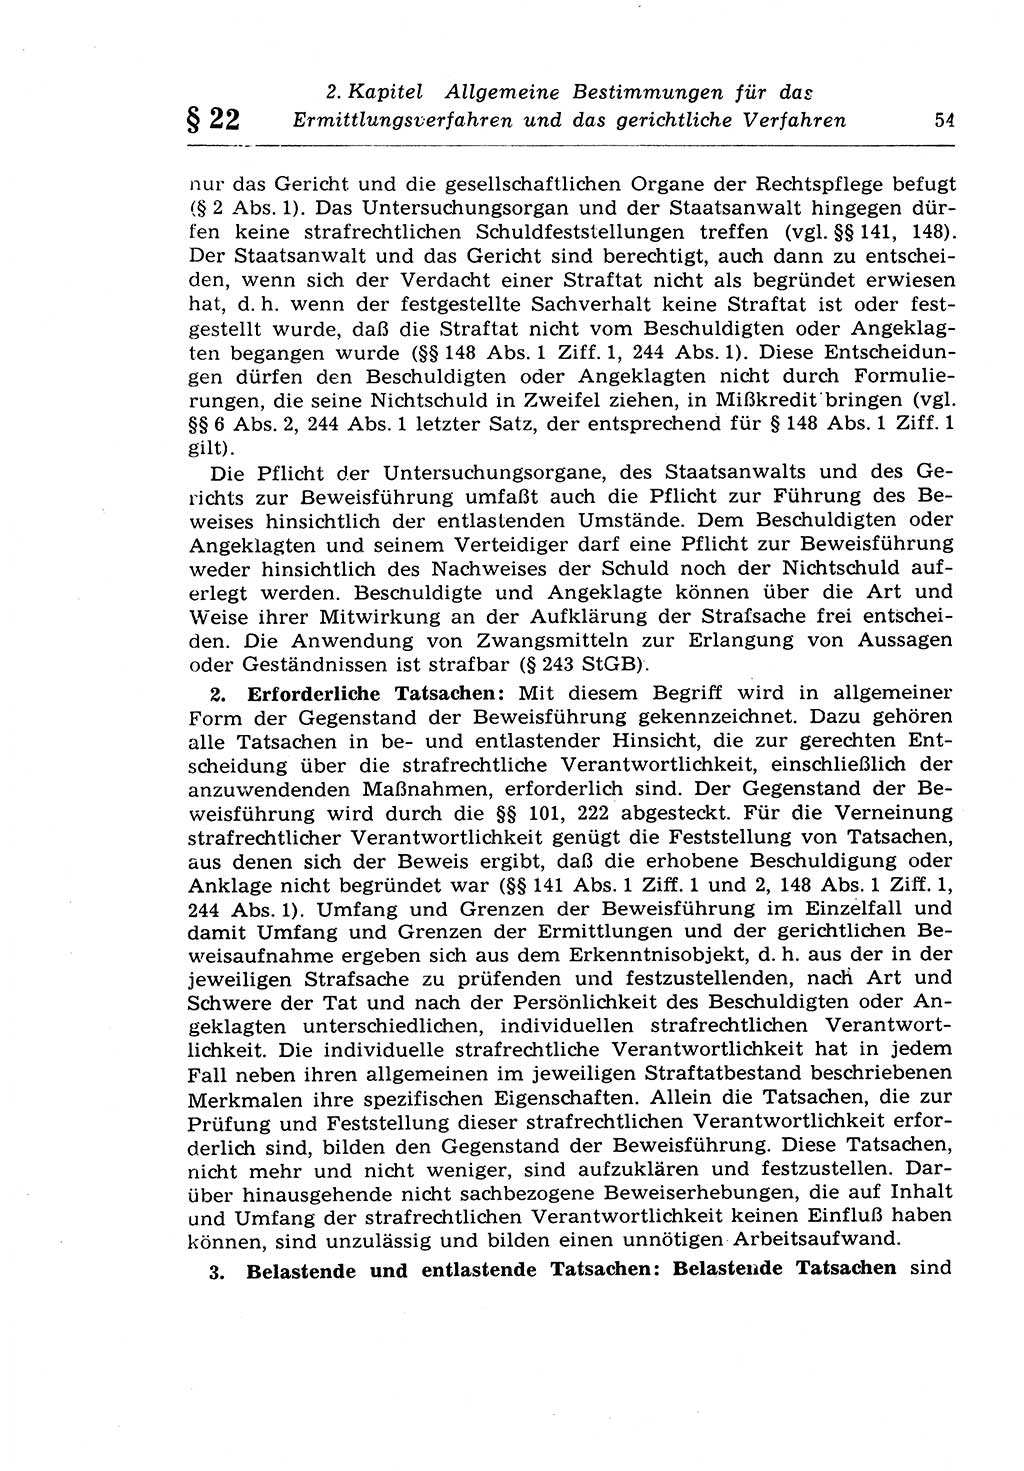 Strafprozeßrecht der DDR (Deutsche Demokratische Republik), Lehrkommentar zur Strafprozeßordnung (StPO) 1968, Seite 54 (Strafprozeßr. DDR Lehrkomm. StPO 19688, S. 54)